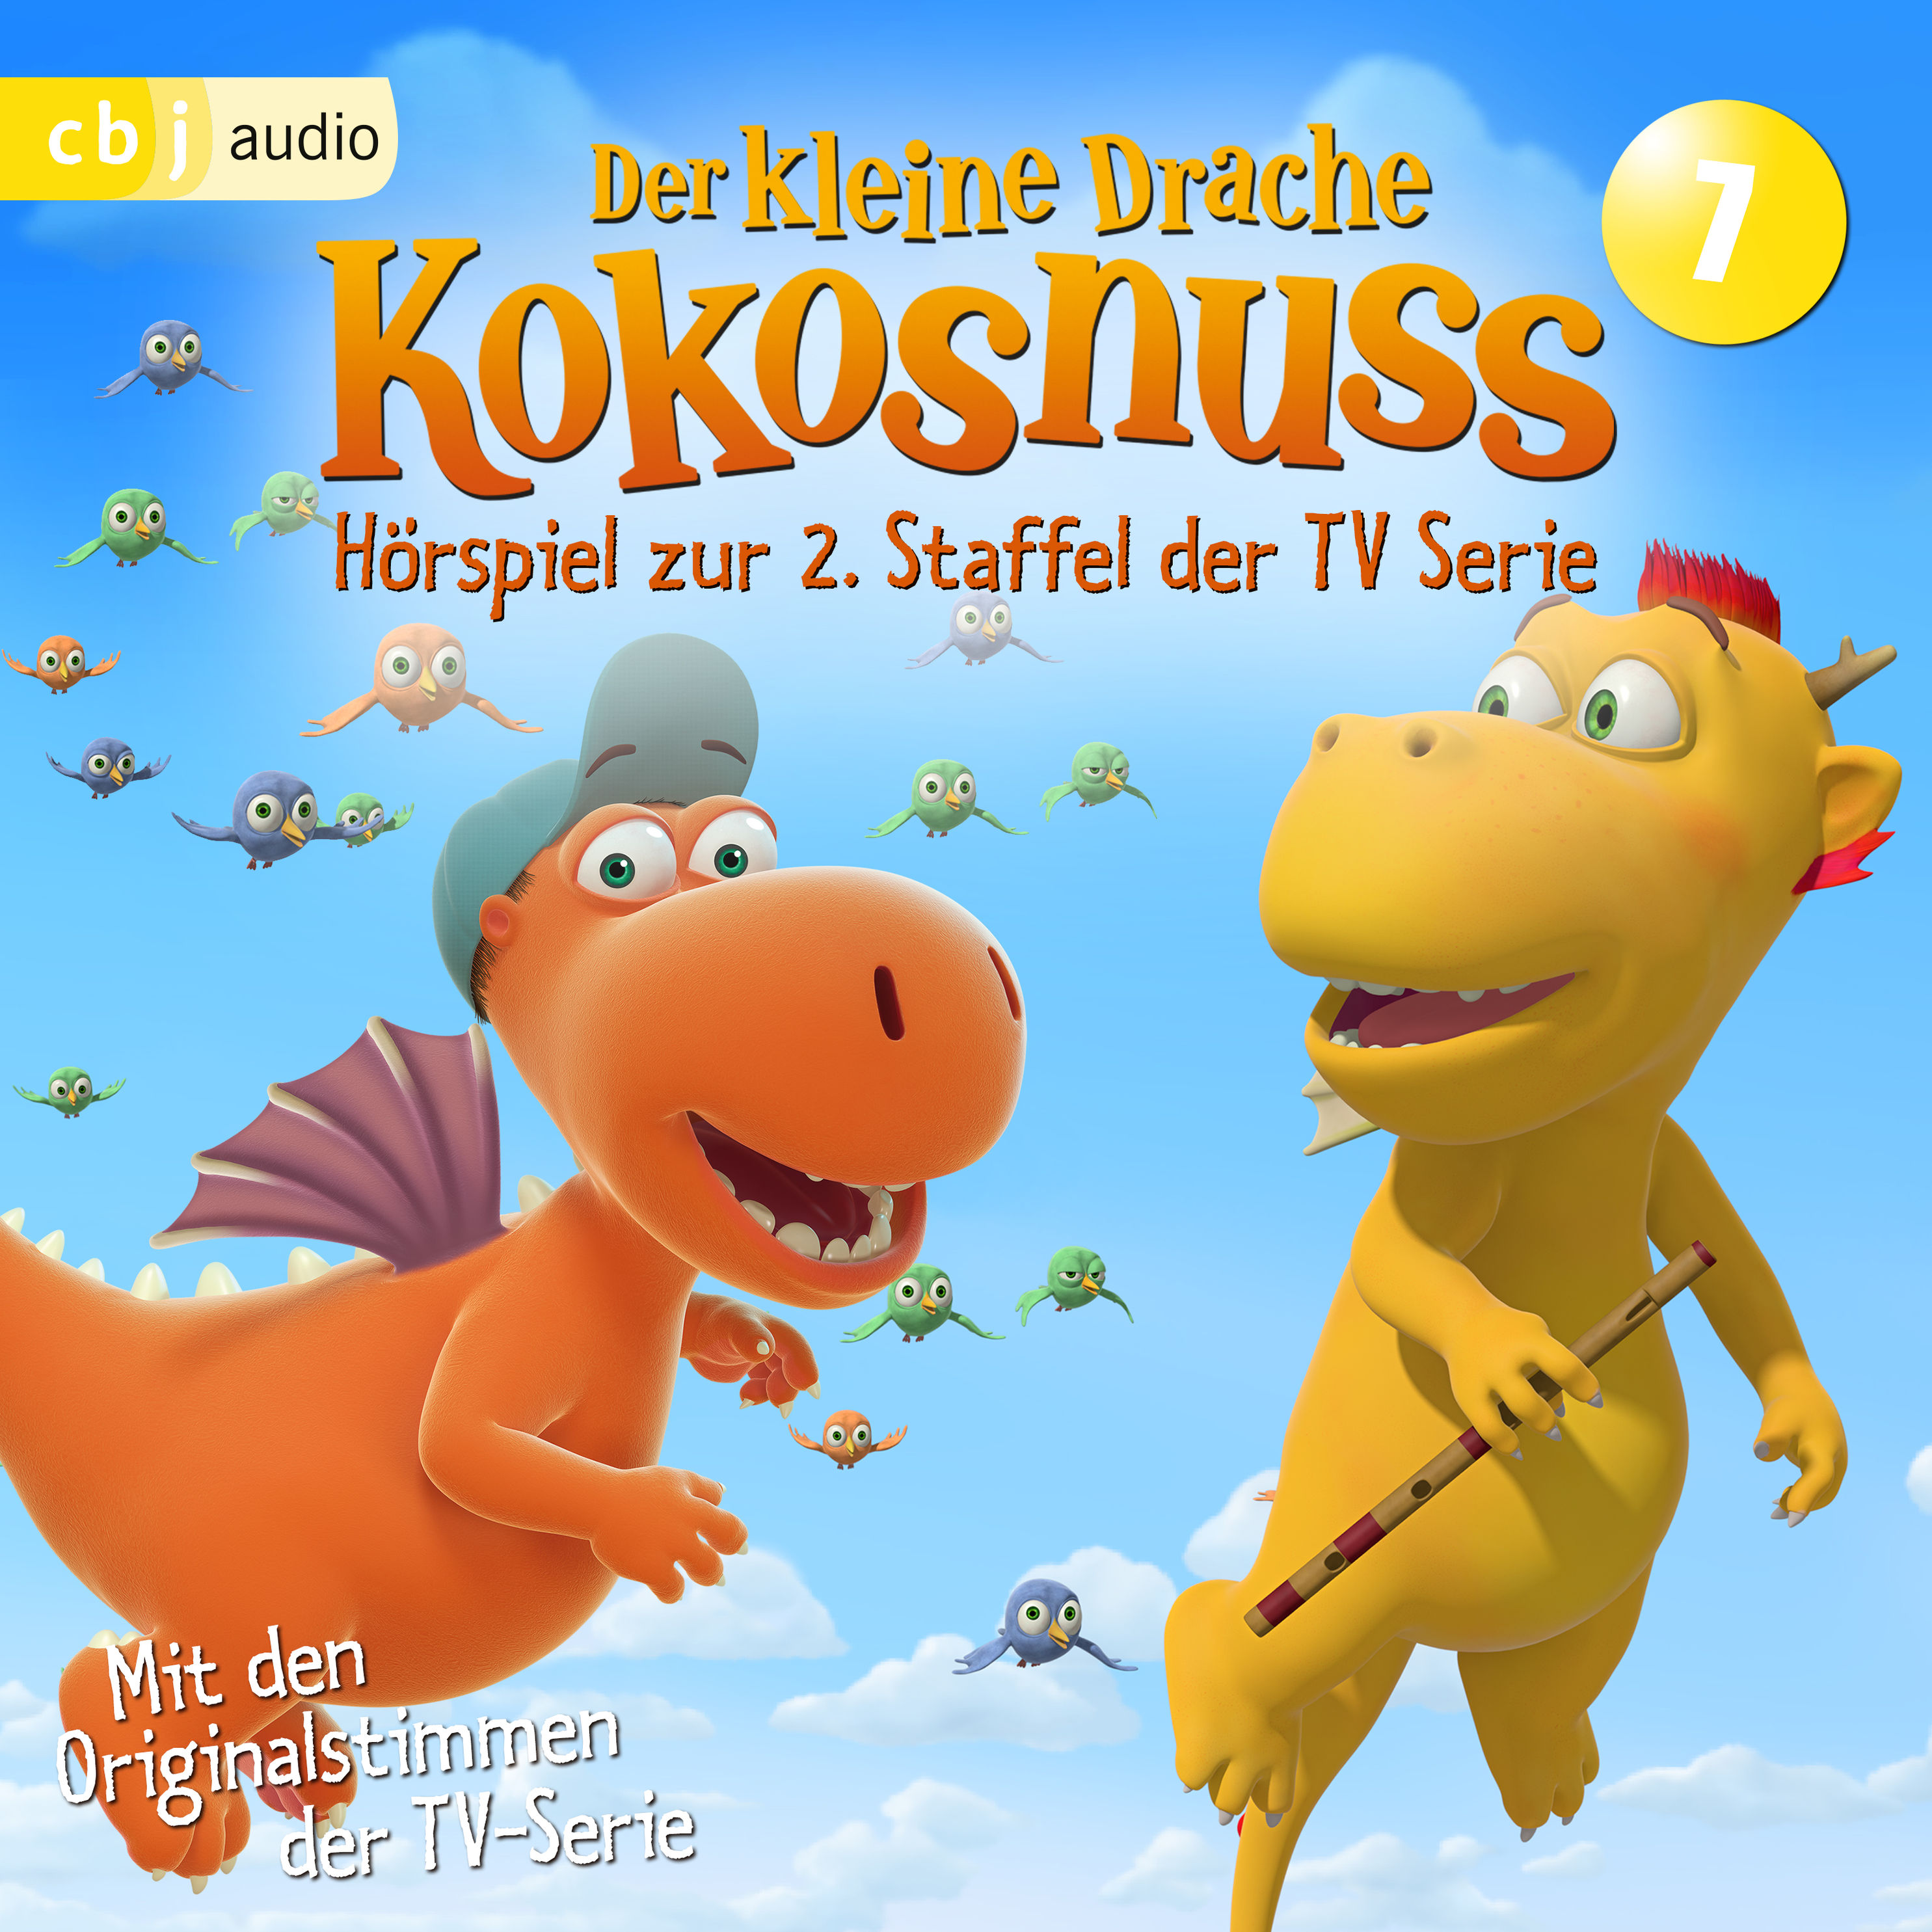 Der Kleine Drache Kokosnuss - Hörspiel zur 2. Staffel der TV-Serie 07  Hörbuch Download